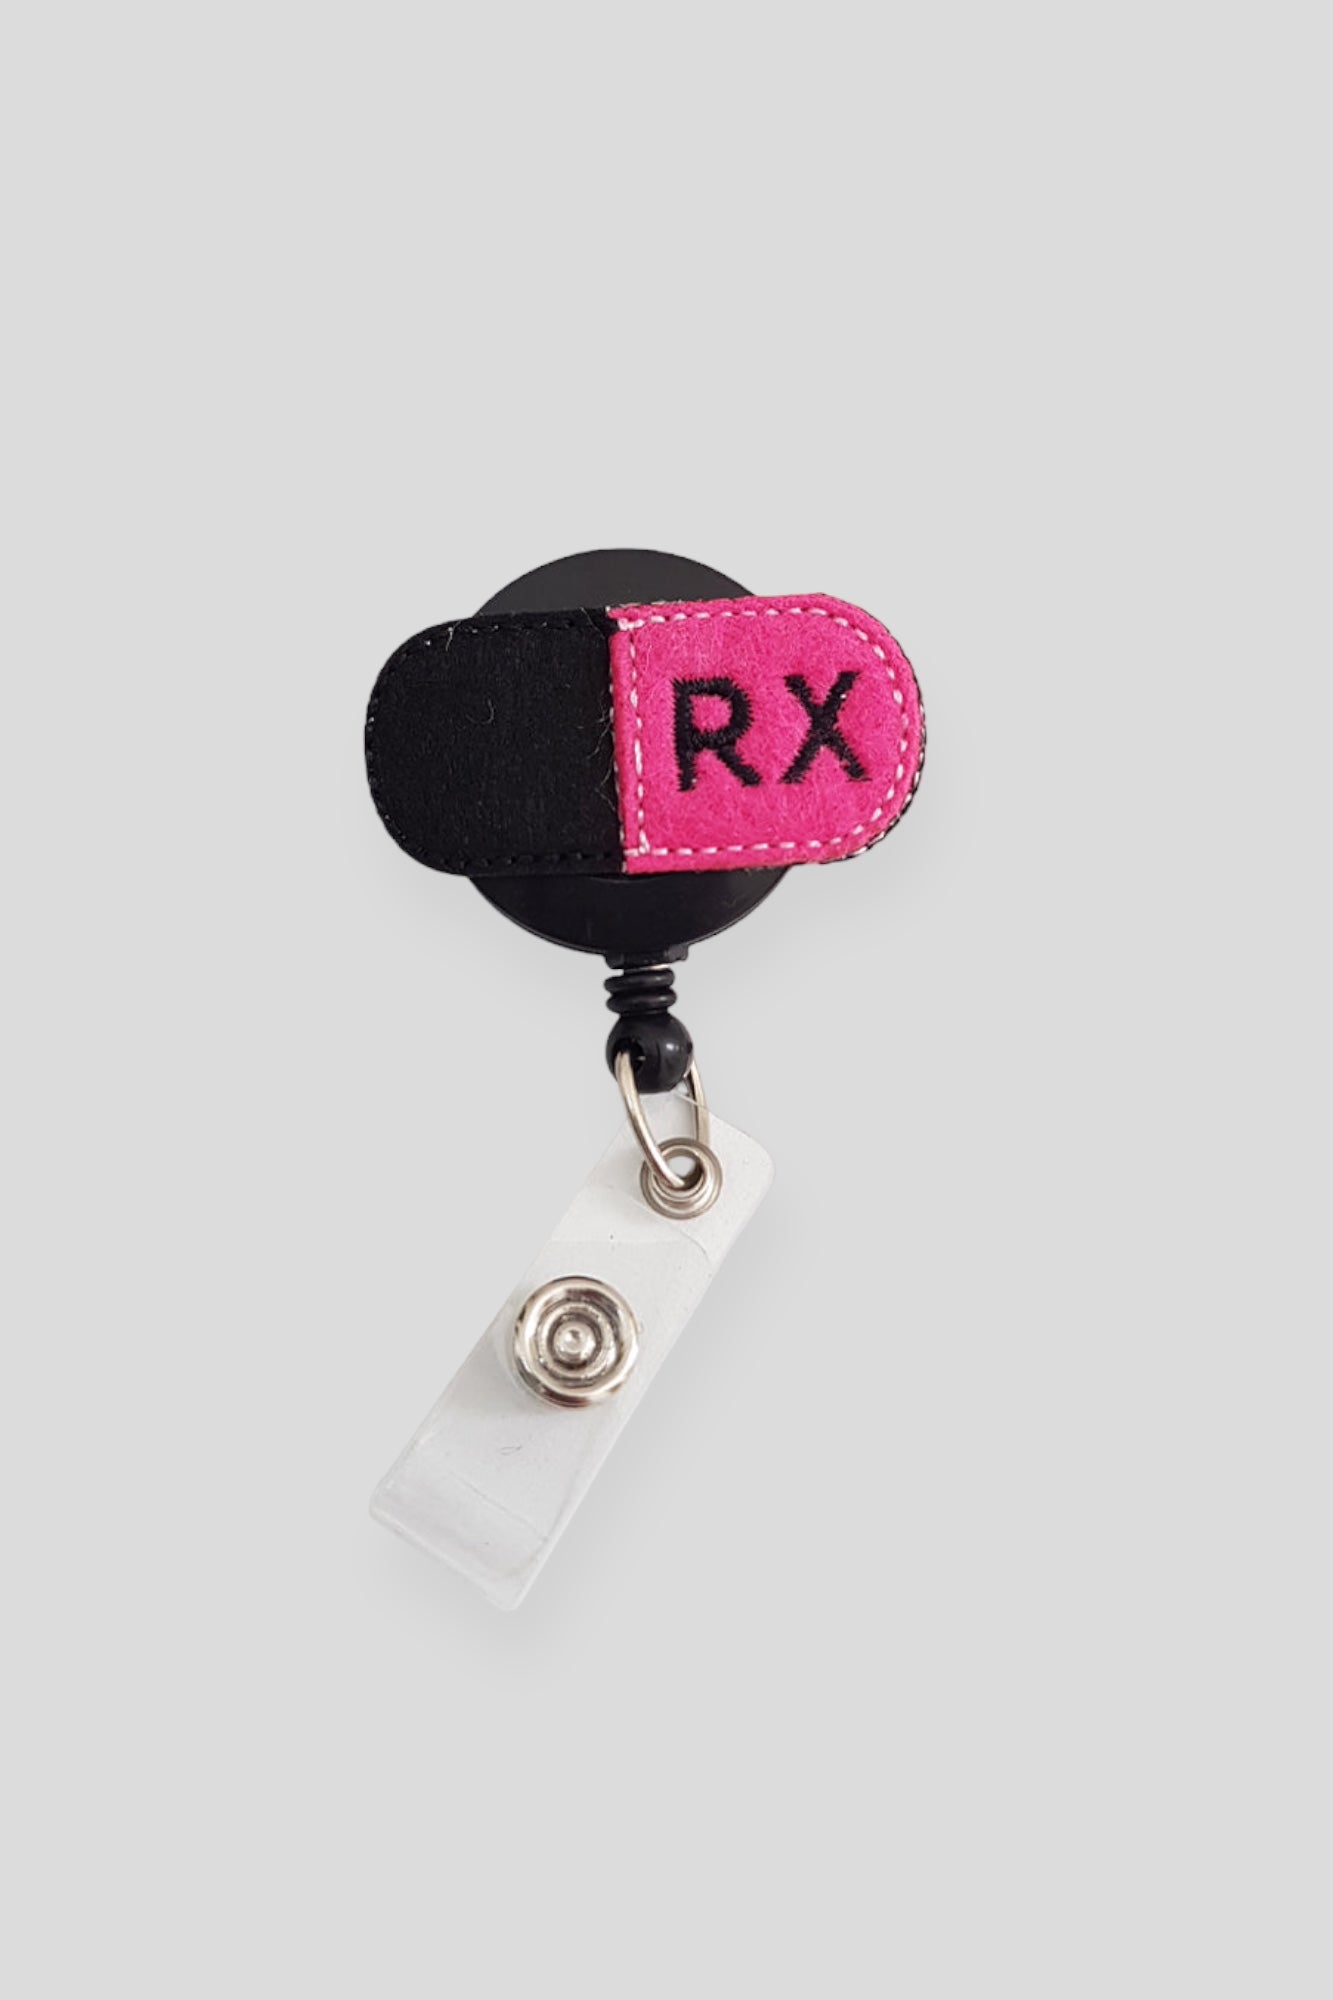 RX Pink Capsule ID Badge